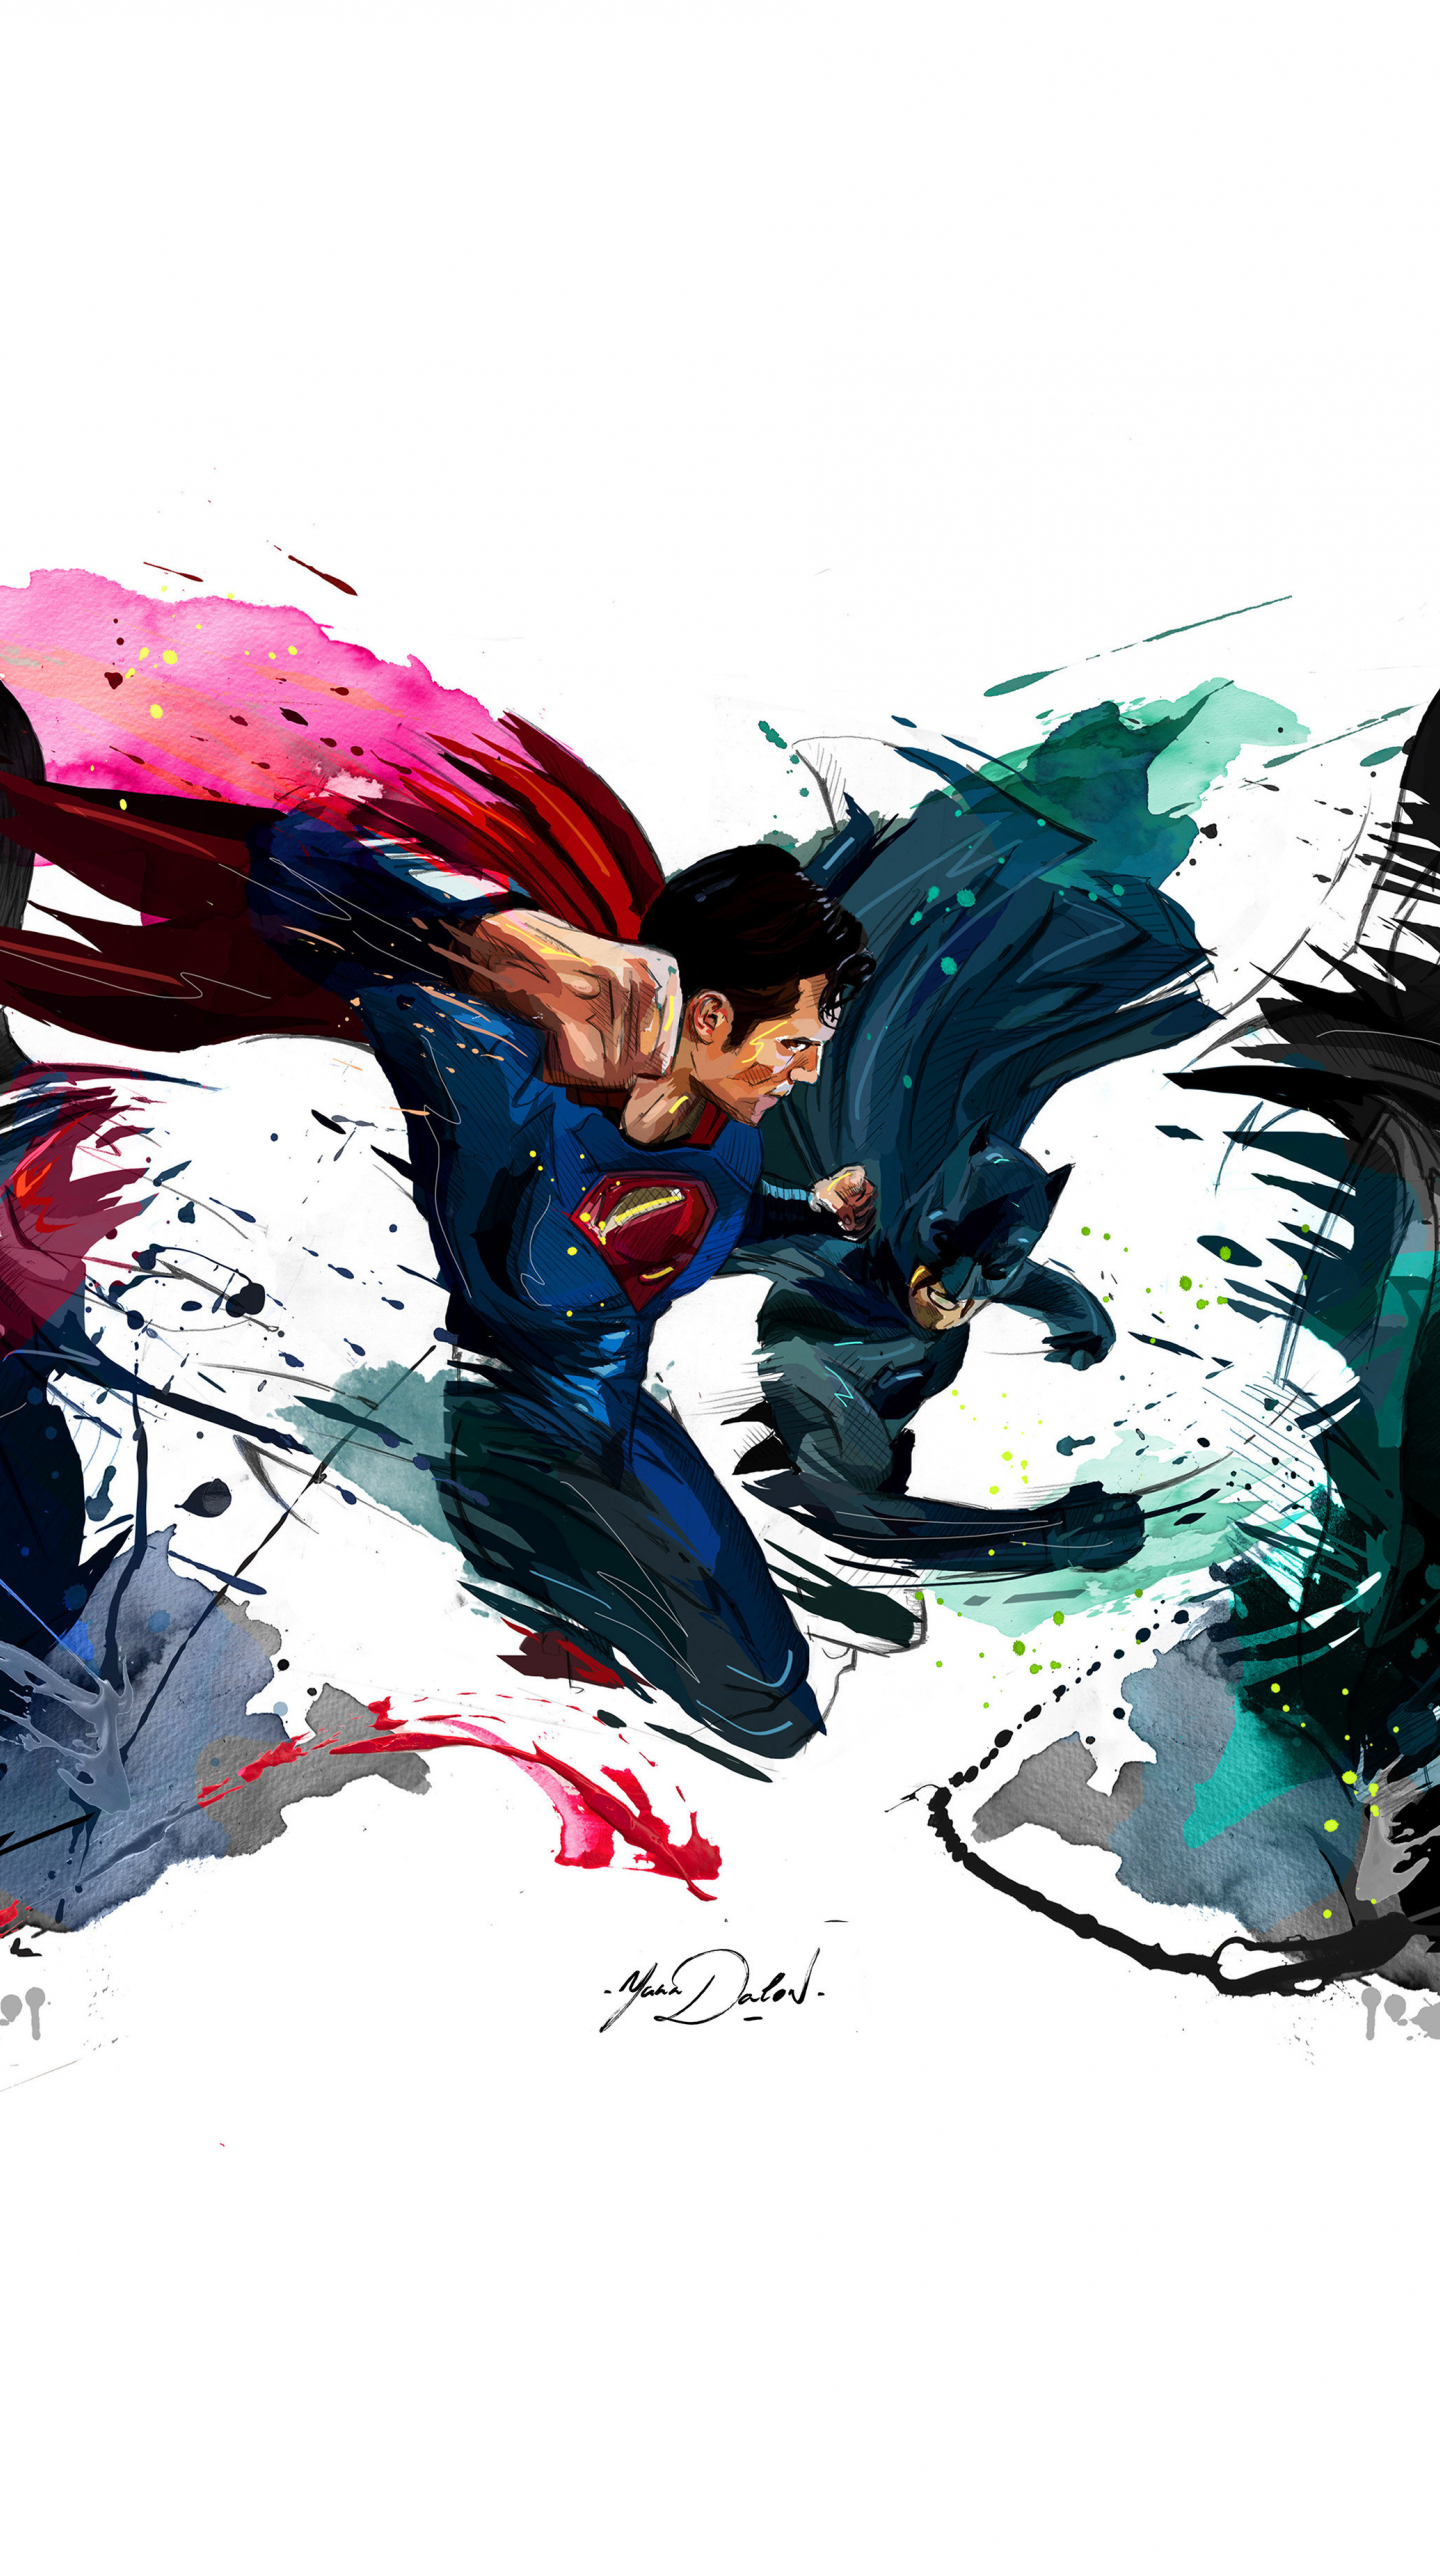 Batman vs superman, 4k, sketch artwork, 1440x2560 wallpaper